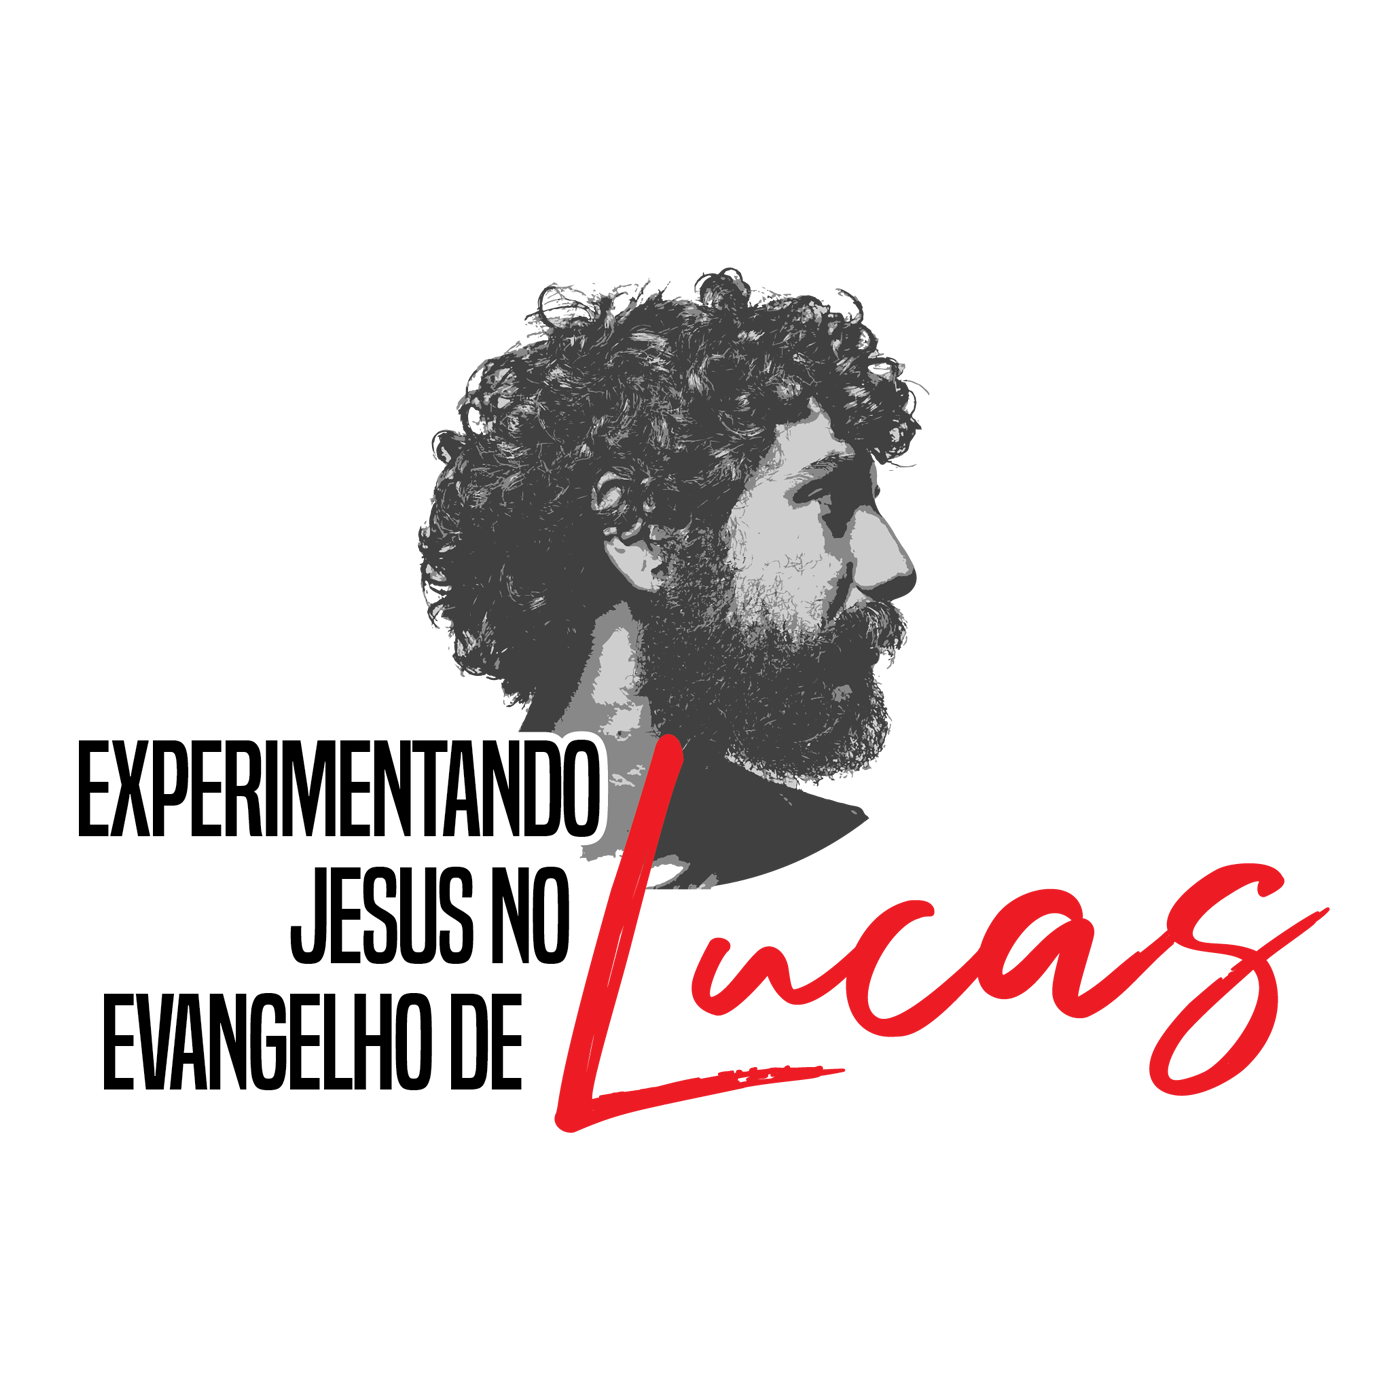 Lucas 3:15-17